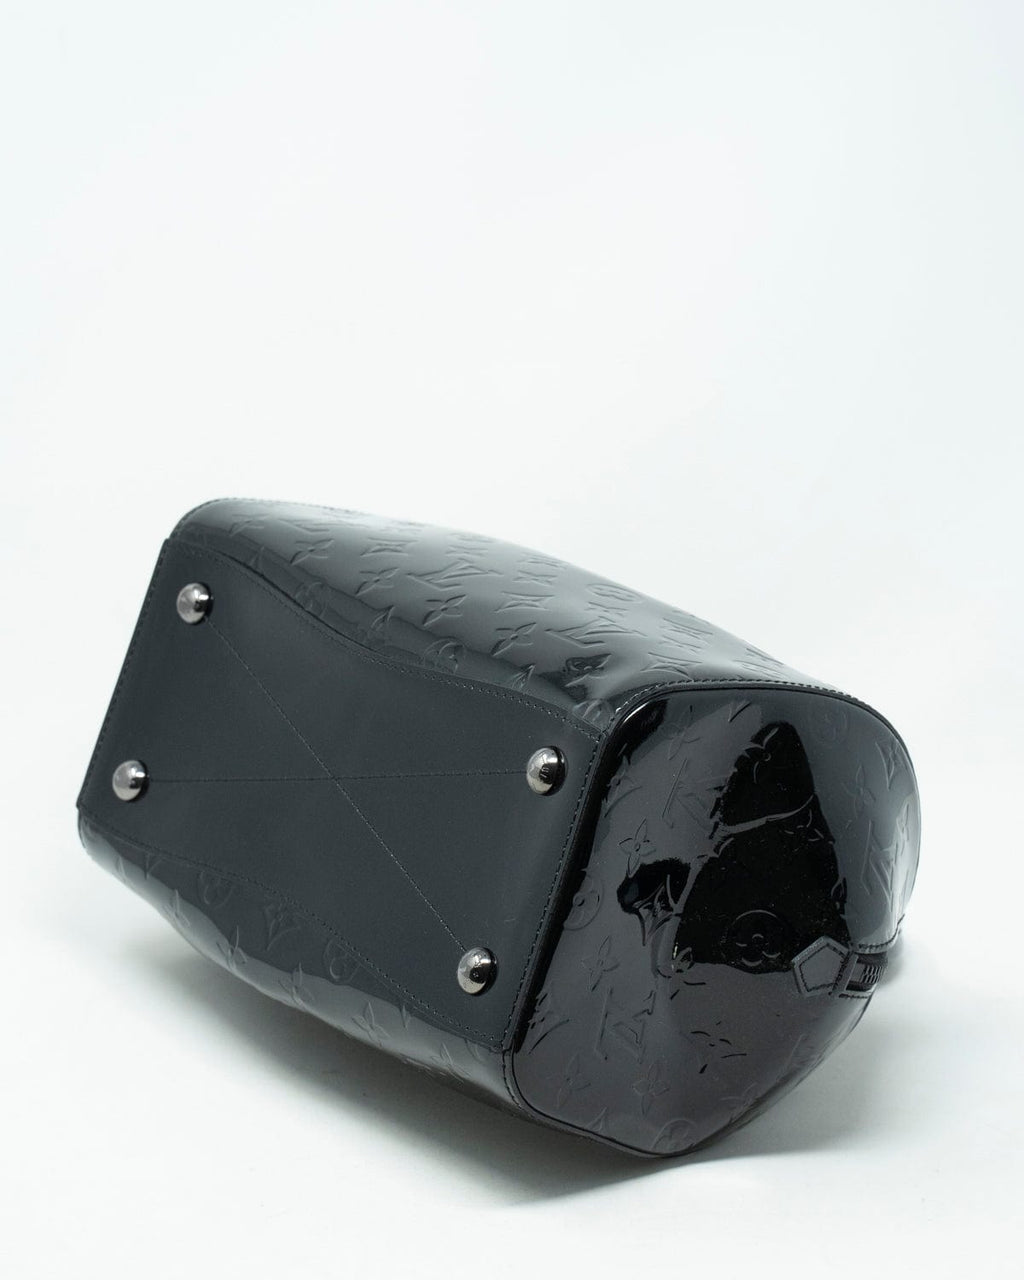 louis vuitton black patent leather handbag